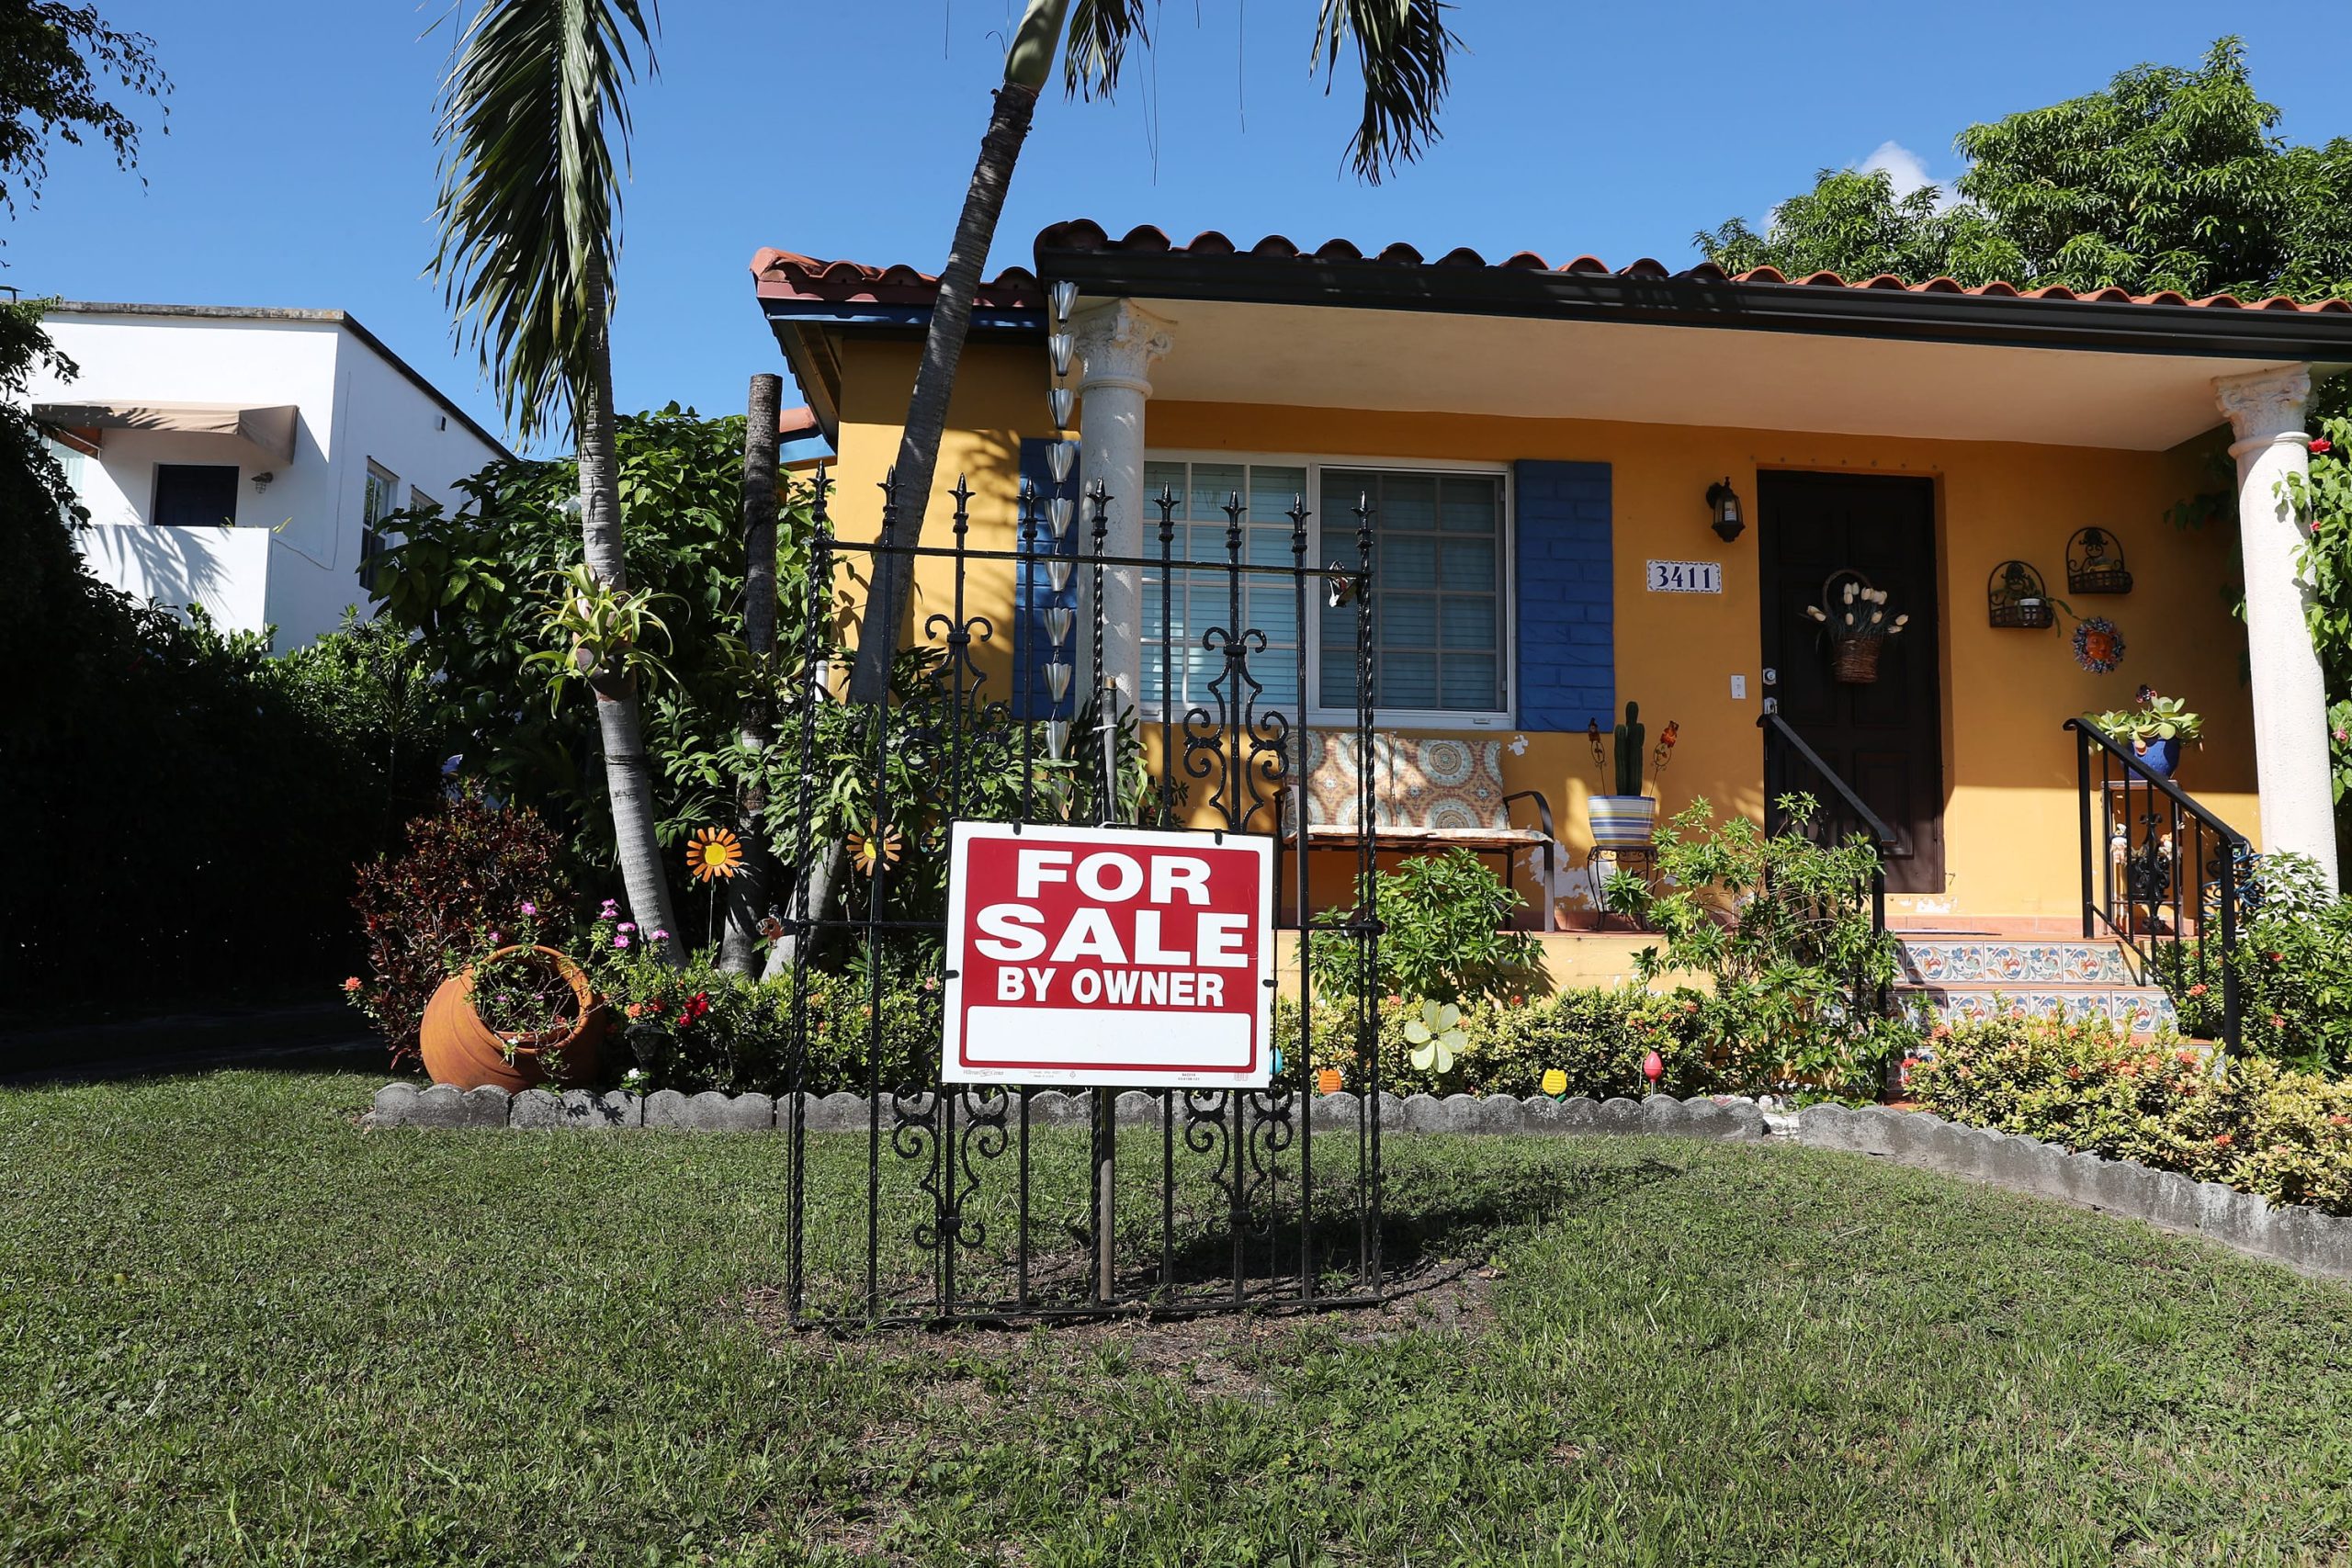 Las tasas hipotecarias caen a un mínimo de cuatro semanas, pero los compradores de viviendas aún retroceden debido a los listados bajos récord